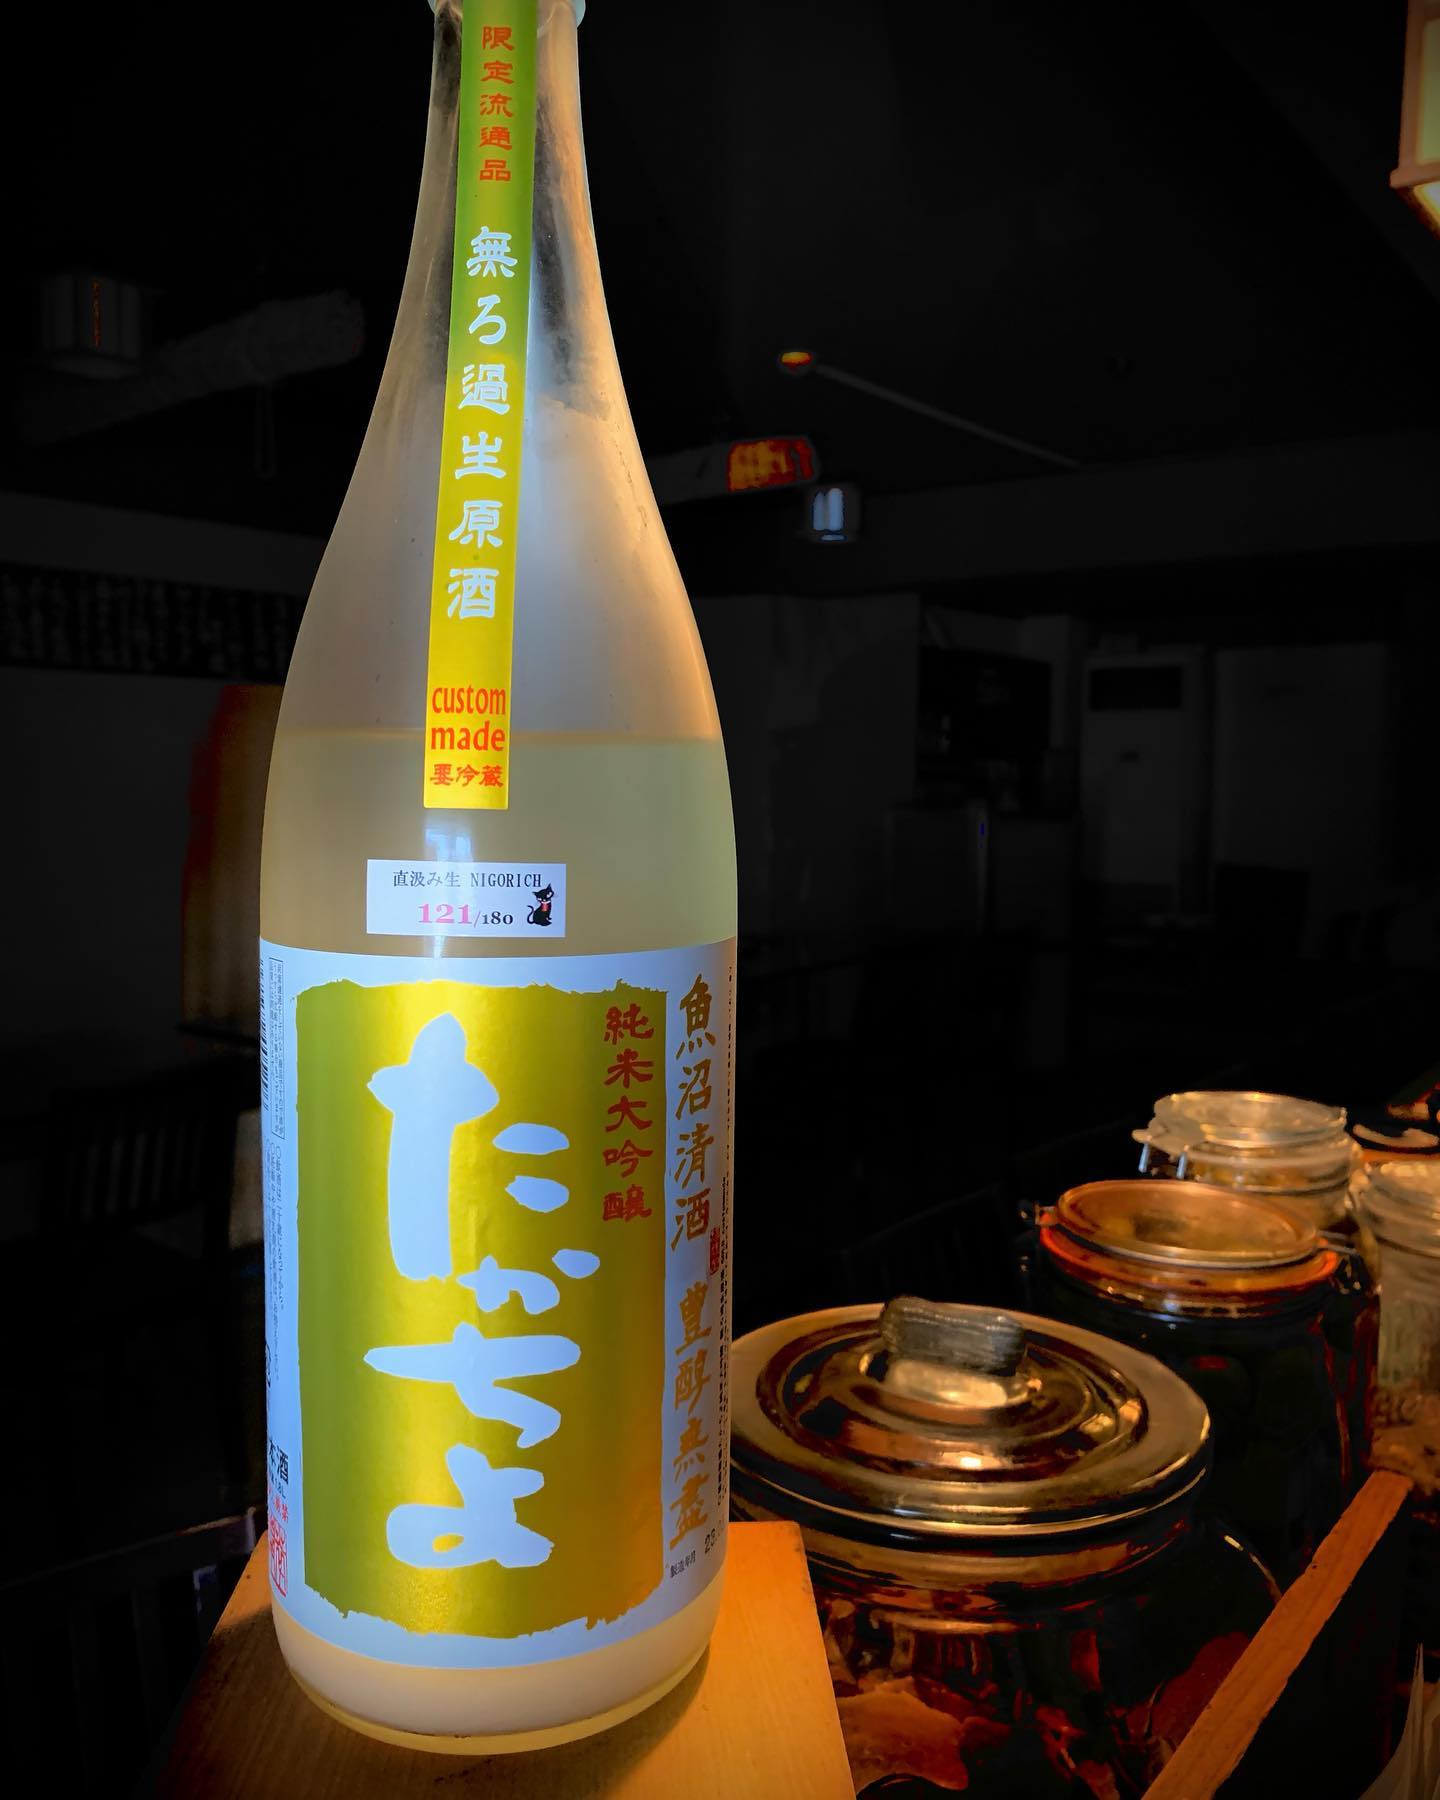 本日の日本酒
「たかちよ」 
今回のは無濾過生原酒で、薄濁り仕様になってます。
爽快な柑橘系の香と控えめで上品な甘みからのシャキッとした心地よい酸でスッとキレます。
 #